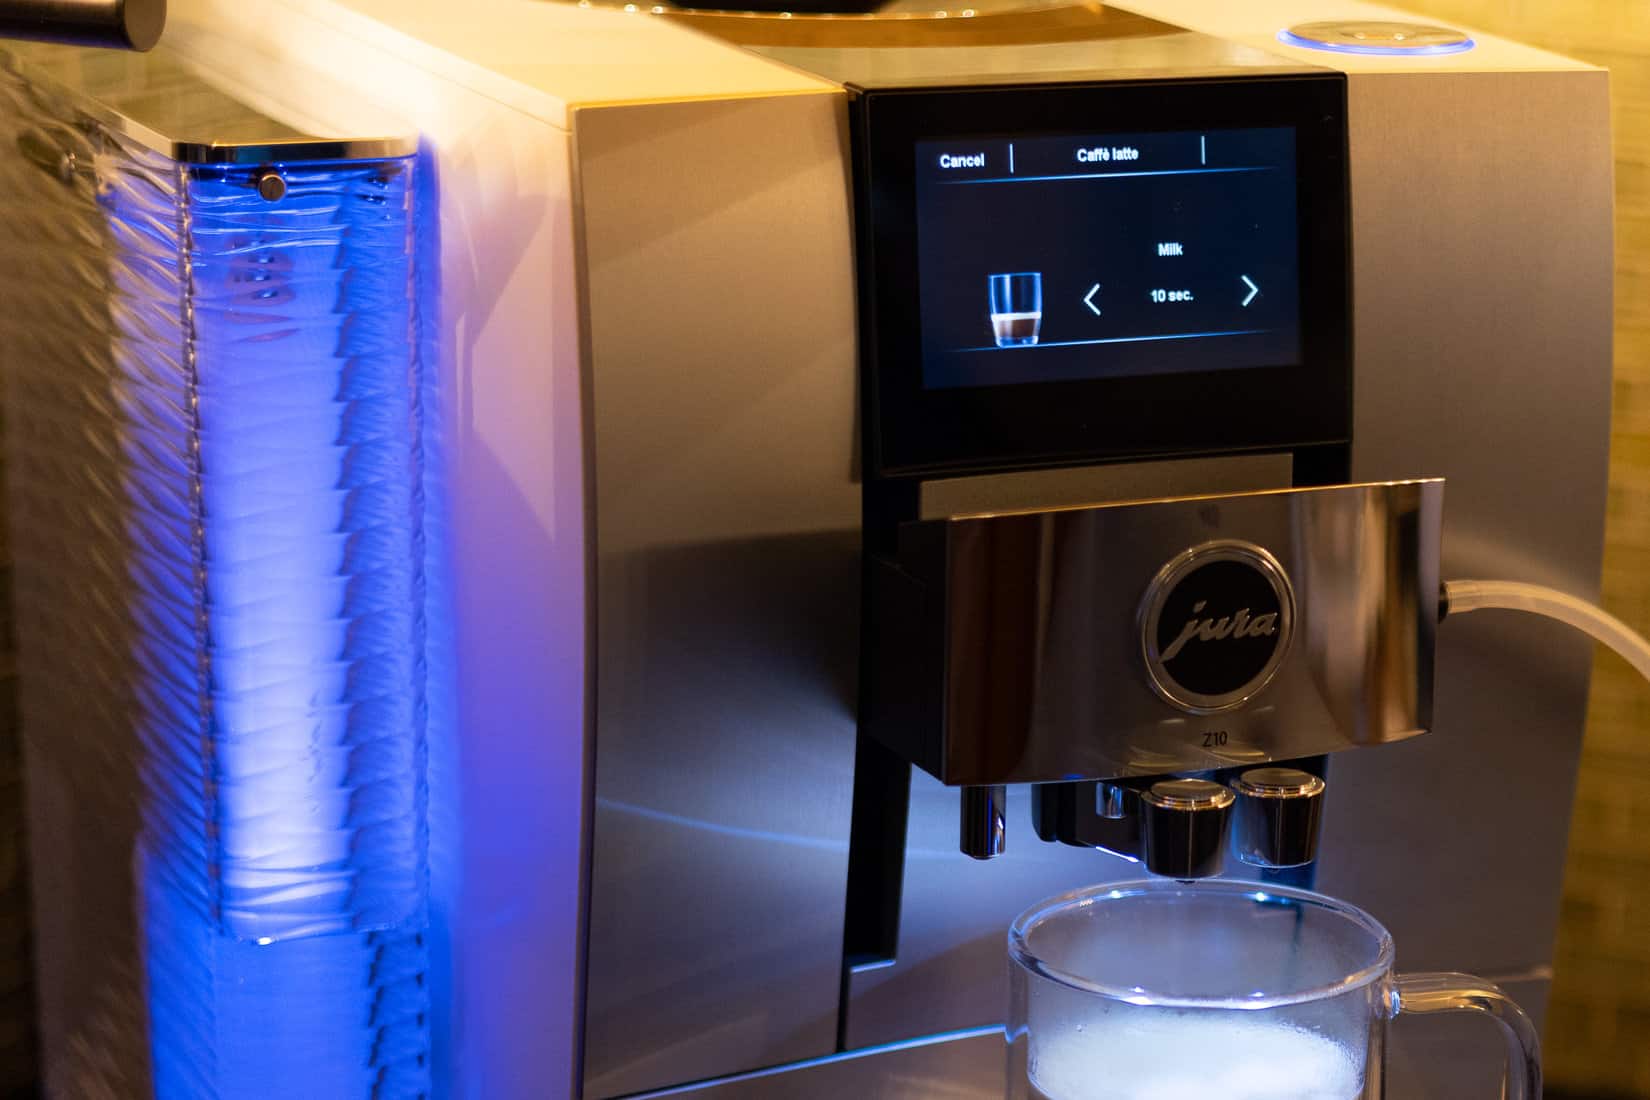 JURA Coffee Machines: Latte Macchiato, Cappuccino, Espresso and Coffee -  JURA